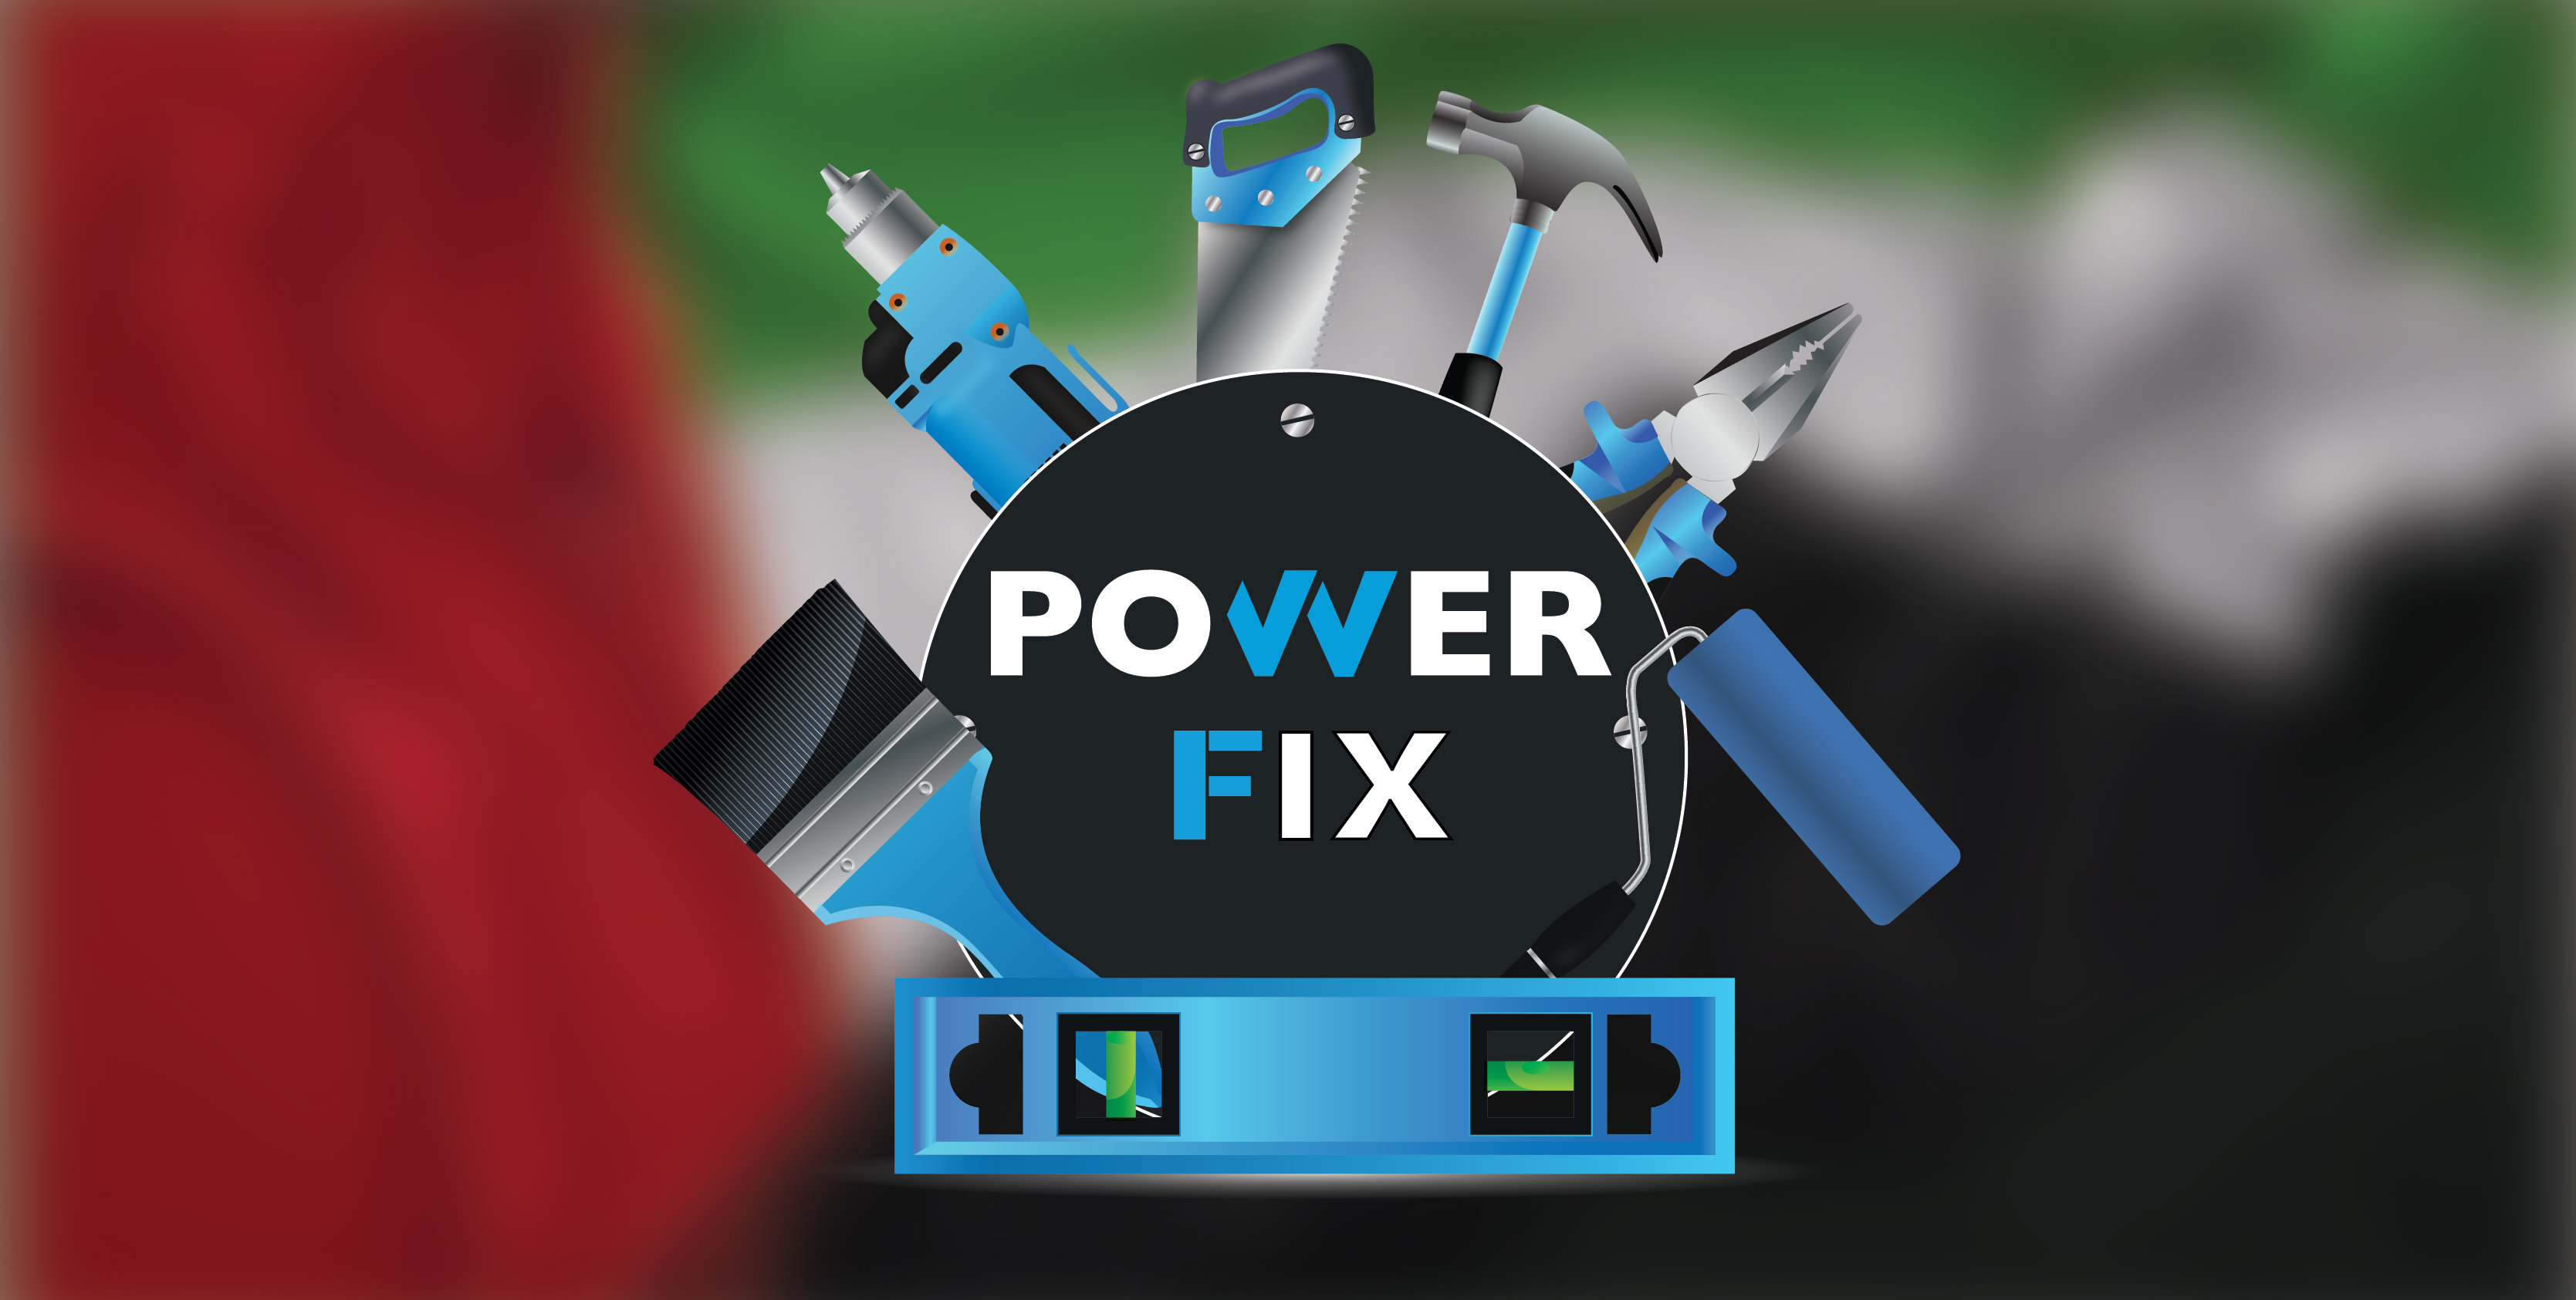 Power Fix